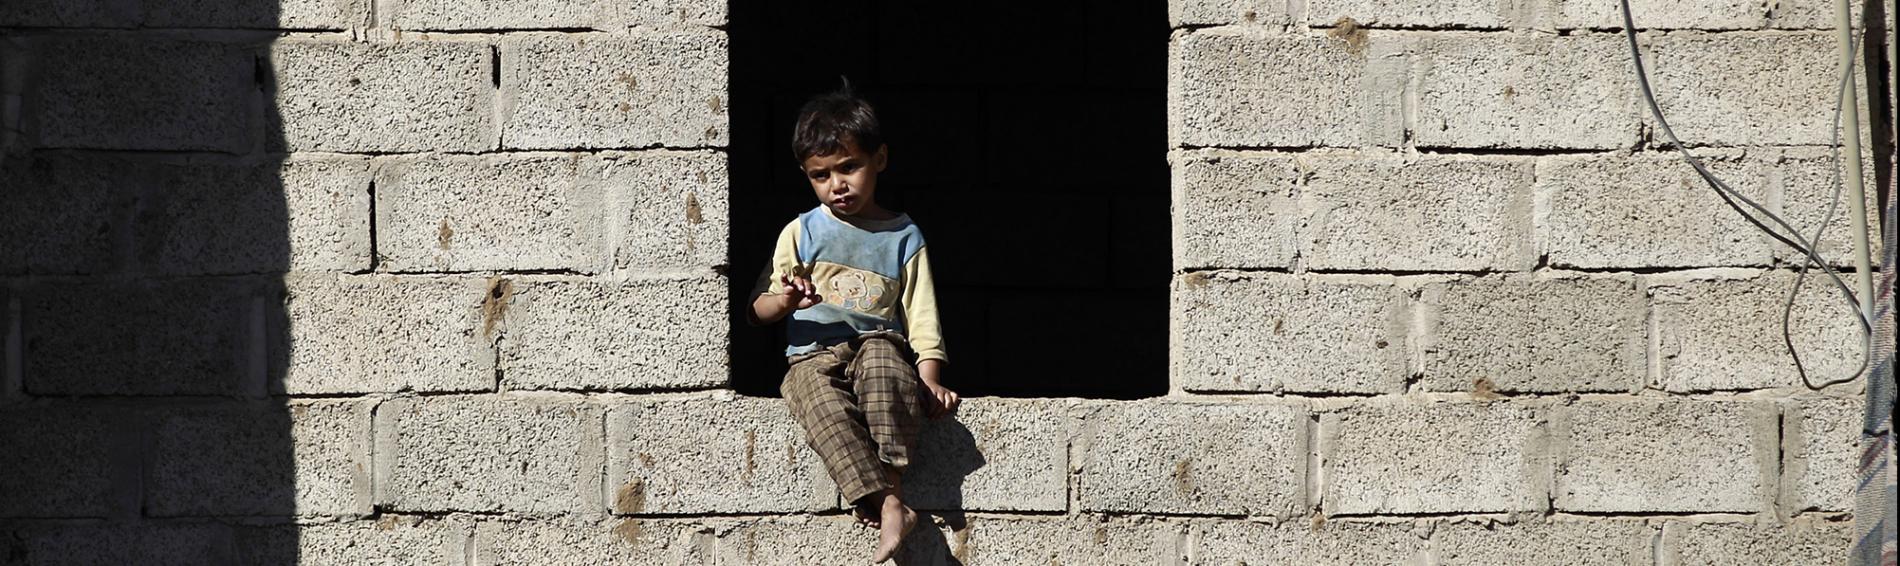 Un petit garçon à la fenêtre d'un bâtiment en ruines.